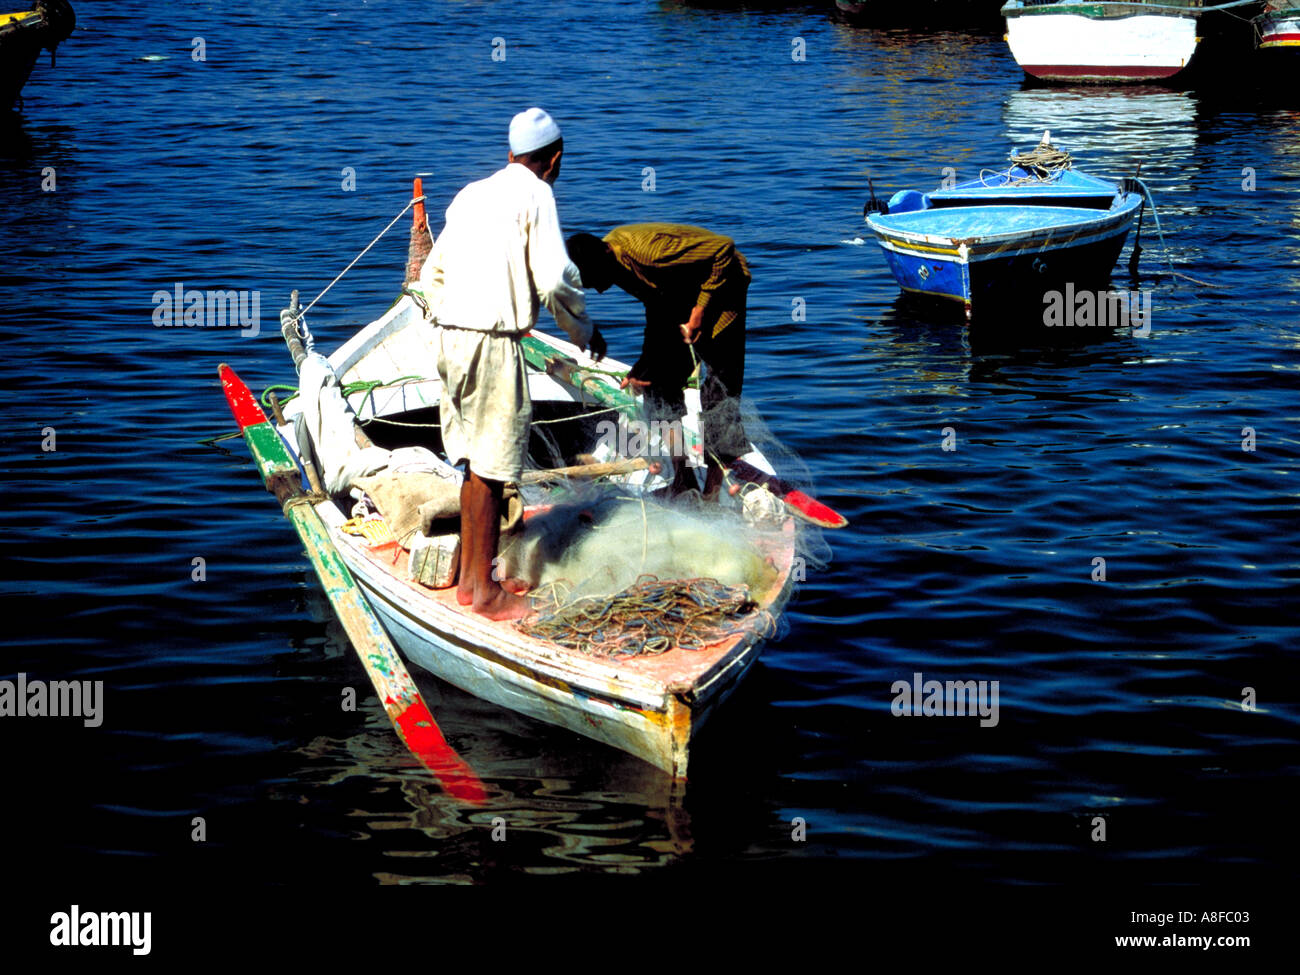 Pêcheurs dans une barque alexandria Egypte Banque D'Images